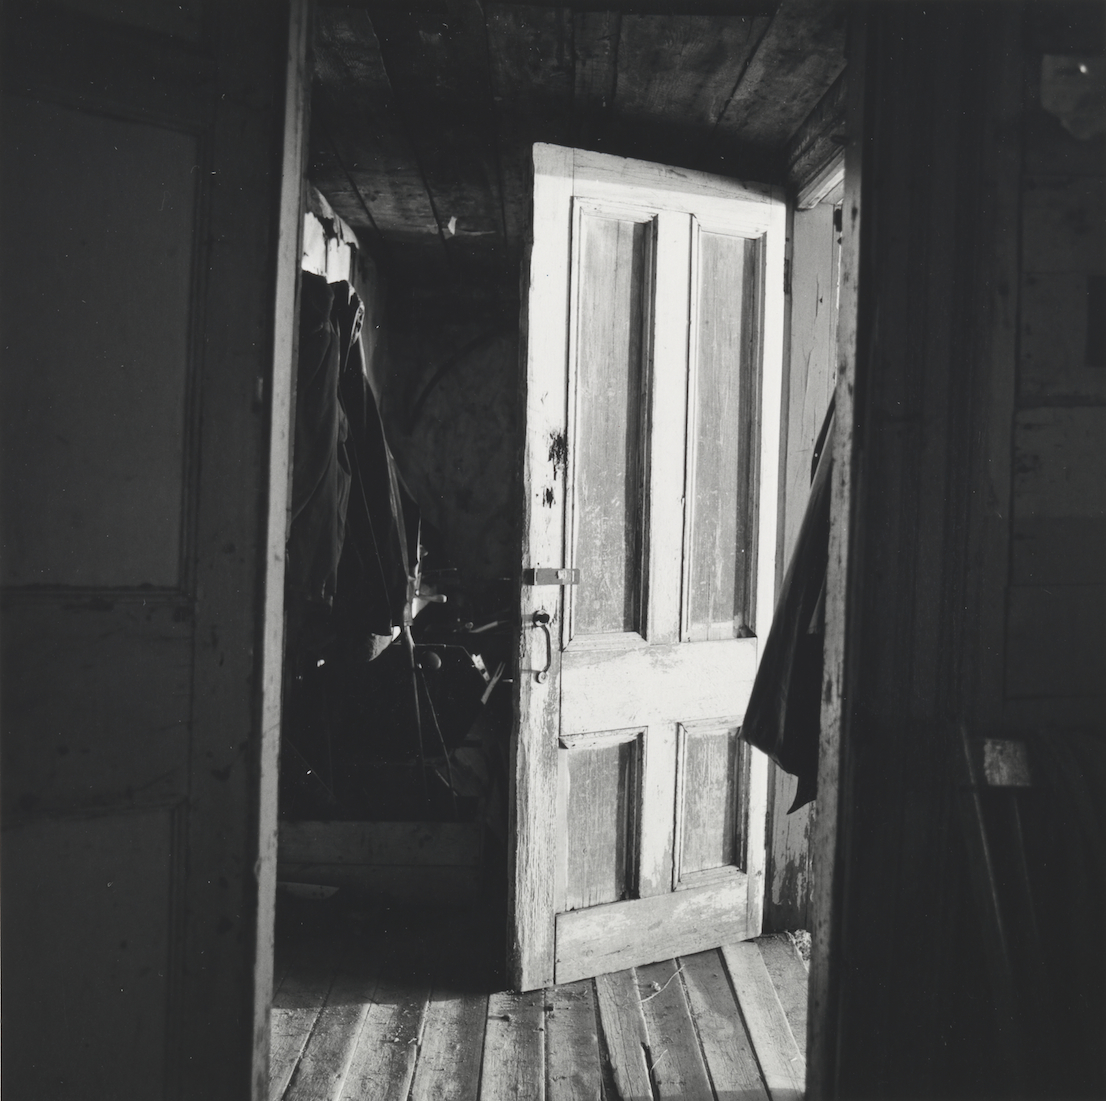 Walker Evans, Interior View of Robert Frank’s House Nova Scotia, 1969 – 71. Collection of Clark and Joan Worswick. © Walker Evans Archive, The Metropolitan Museum of Art.